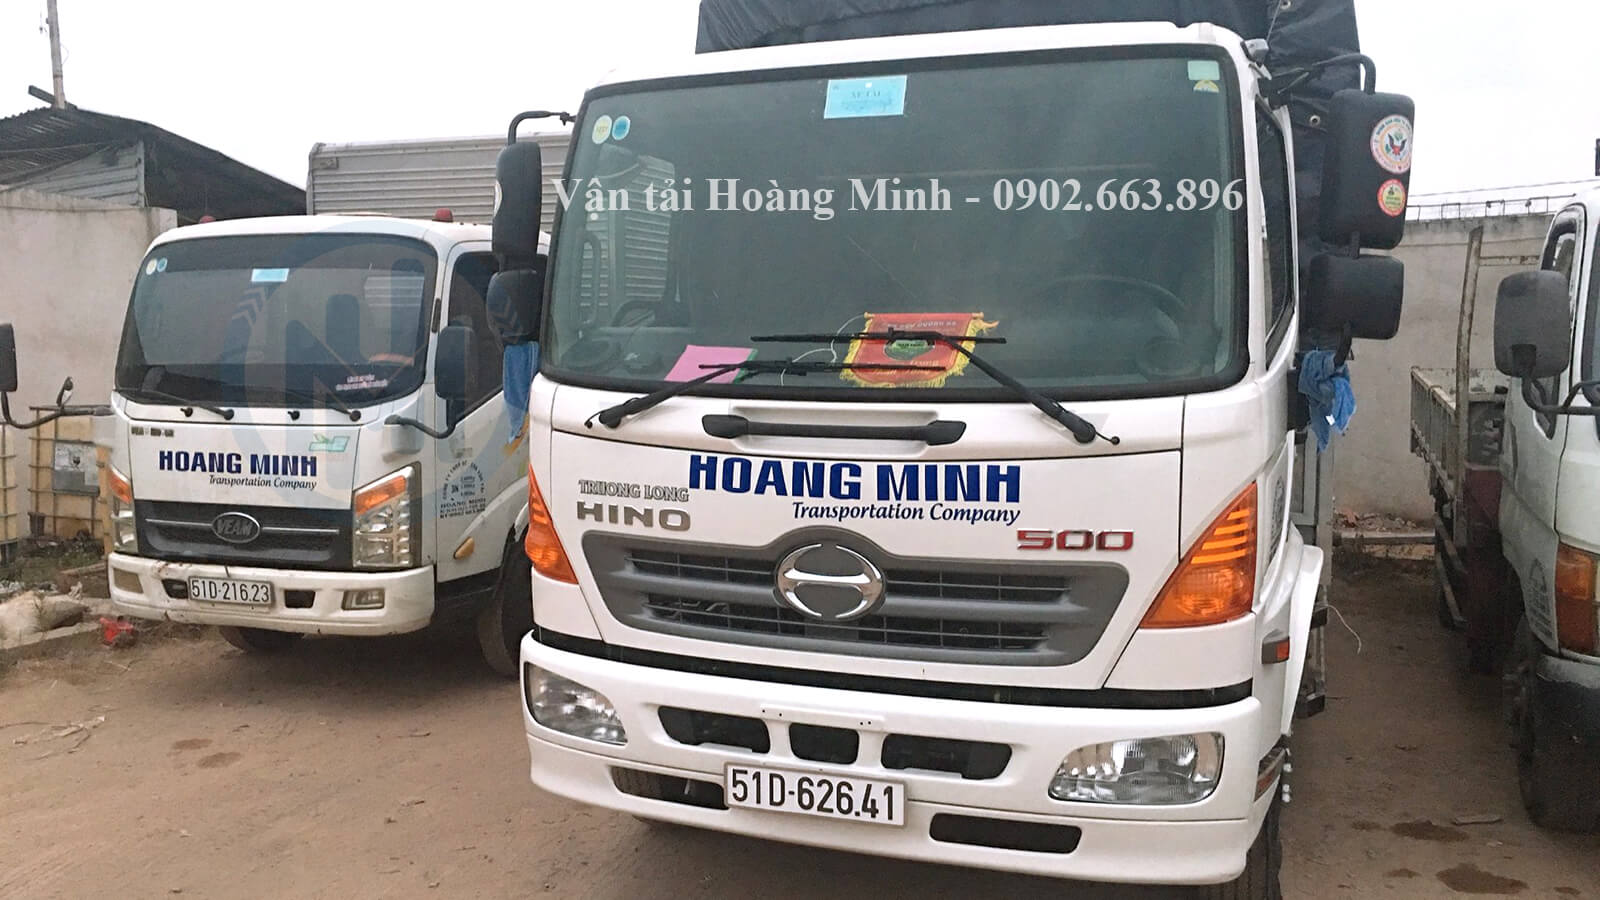 Liên hệ cho thuê xe tải chở hàng Biên Hòa ngay hôm nay